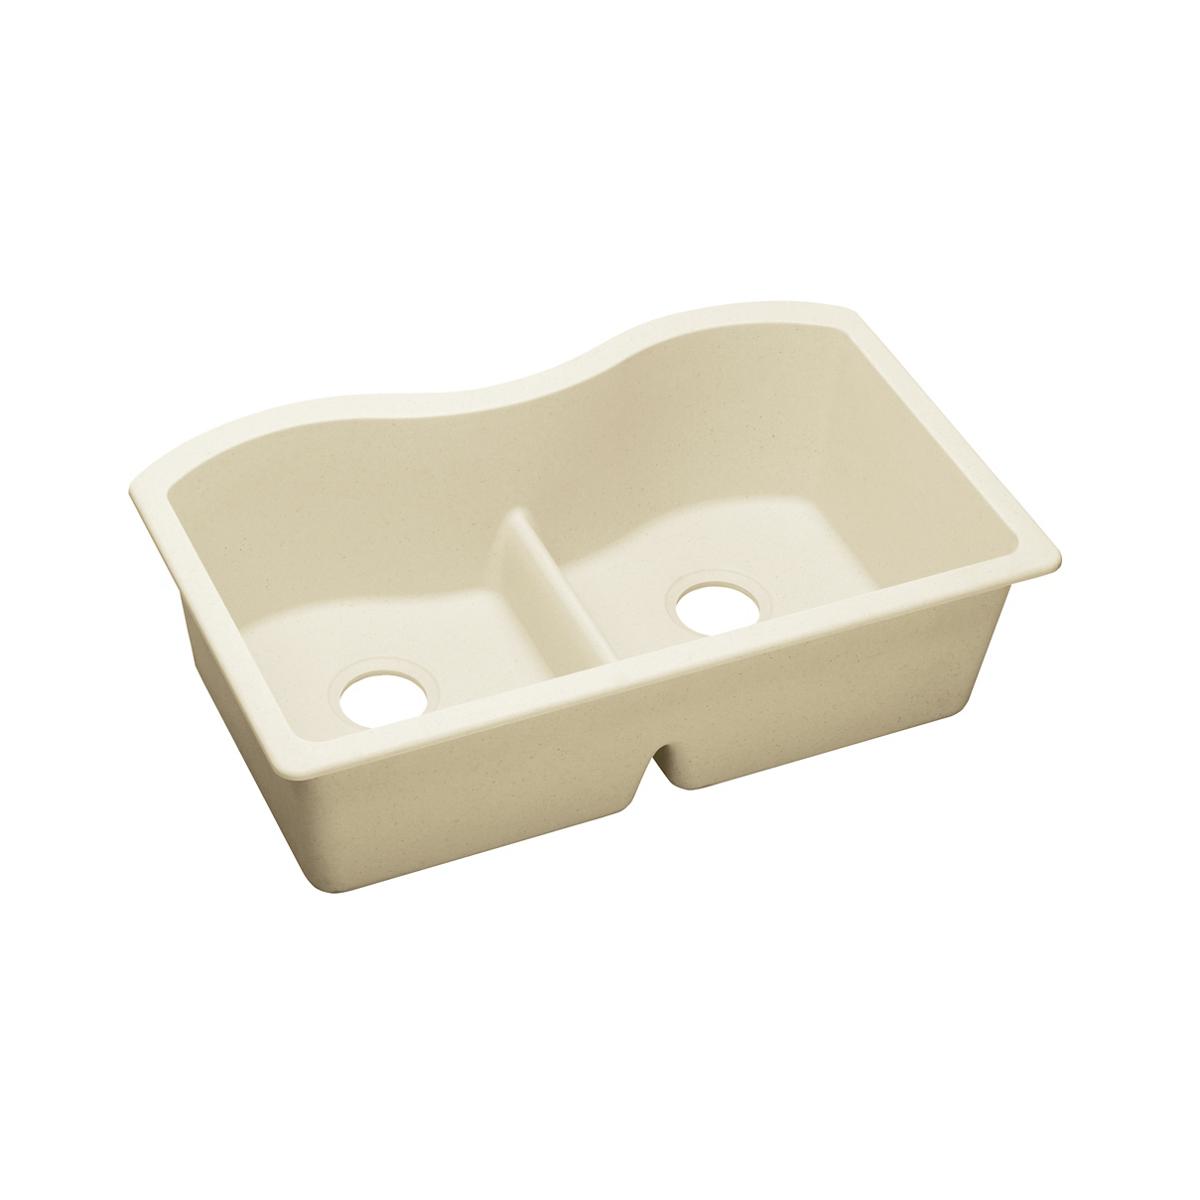 Elkay Quartz Luxe 33" x 20" x 9-1/2", Equal Double Bowl Undermount Sink with Aqua Divide, Parchment